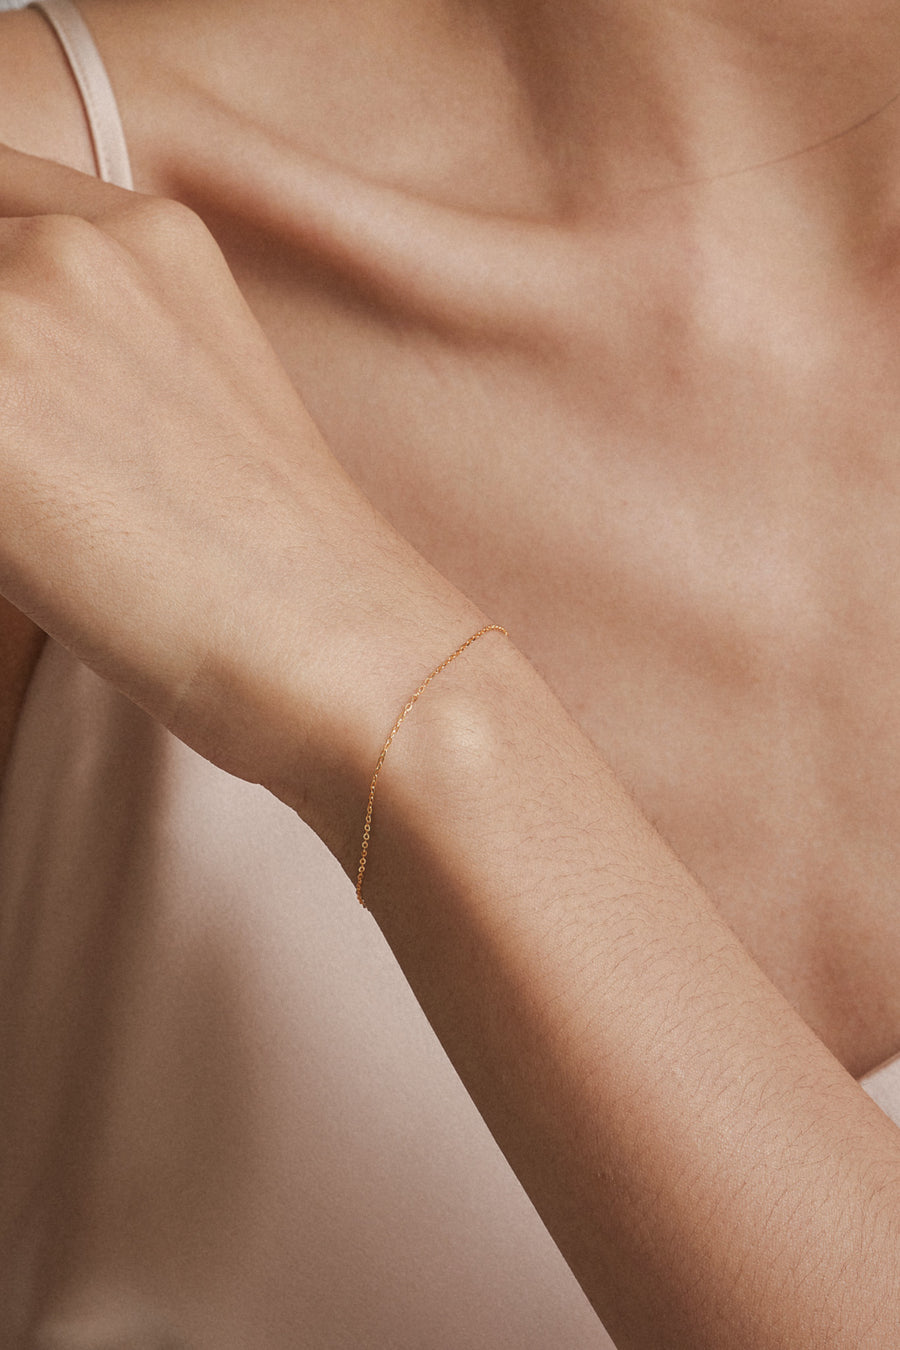 [14K] Skin chain bracelet